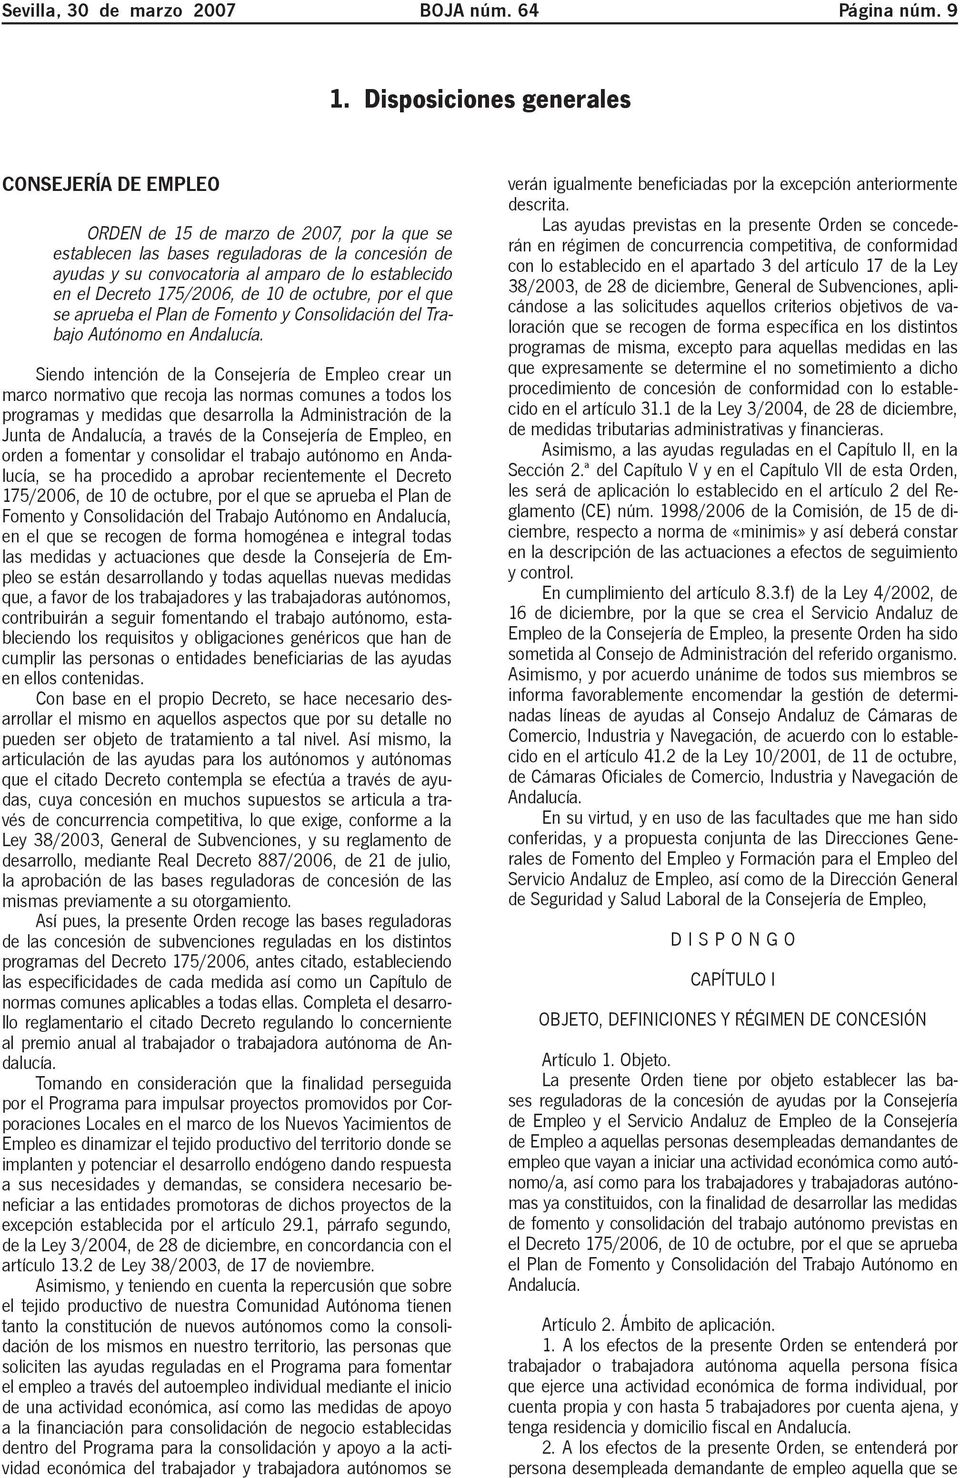 Decreto 175/2006, de 10 de octubre, por el que se aprueba el Plan de Fomento y Consolidación del Trabajo Autónomo en Andalucía.